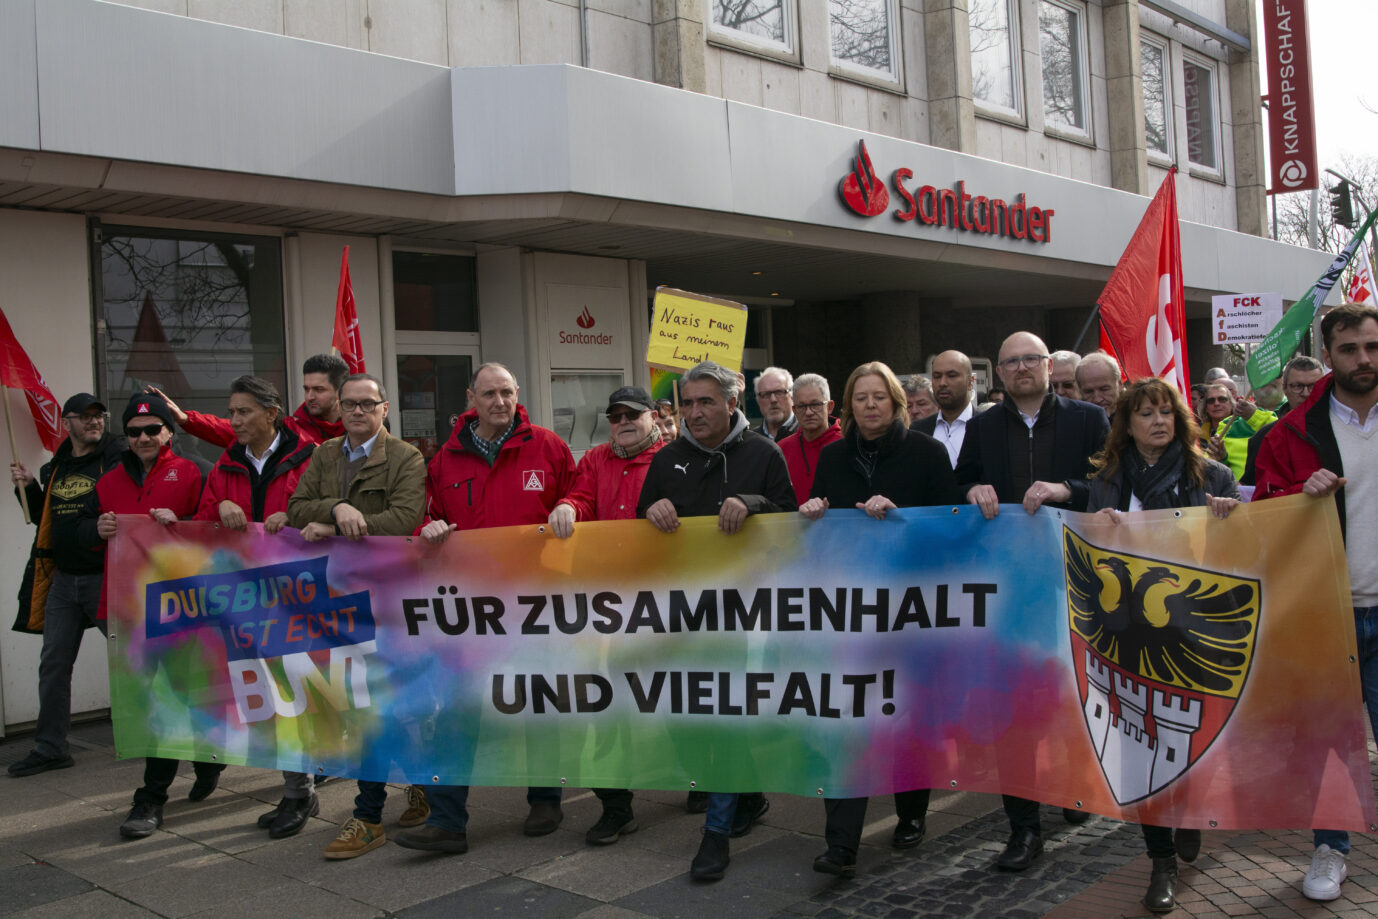 Anti-AfD-Kundgebung in Duisburg: Wenn Regierungspolitiker gegen die Opposition demonstrieren, ist das noch Demokratie?